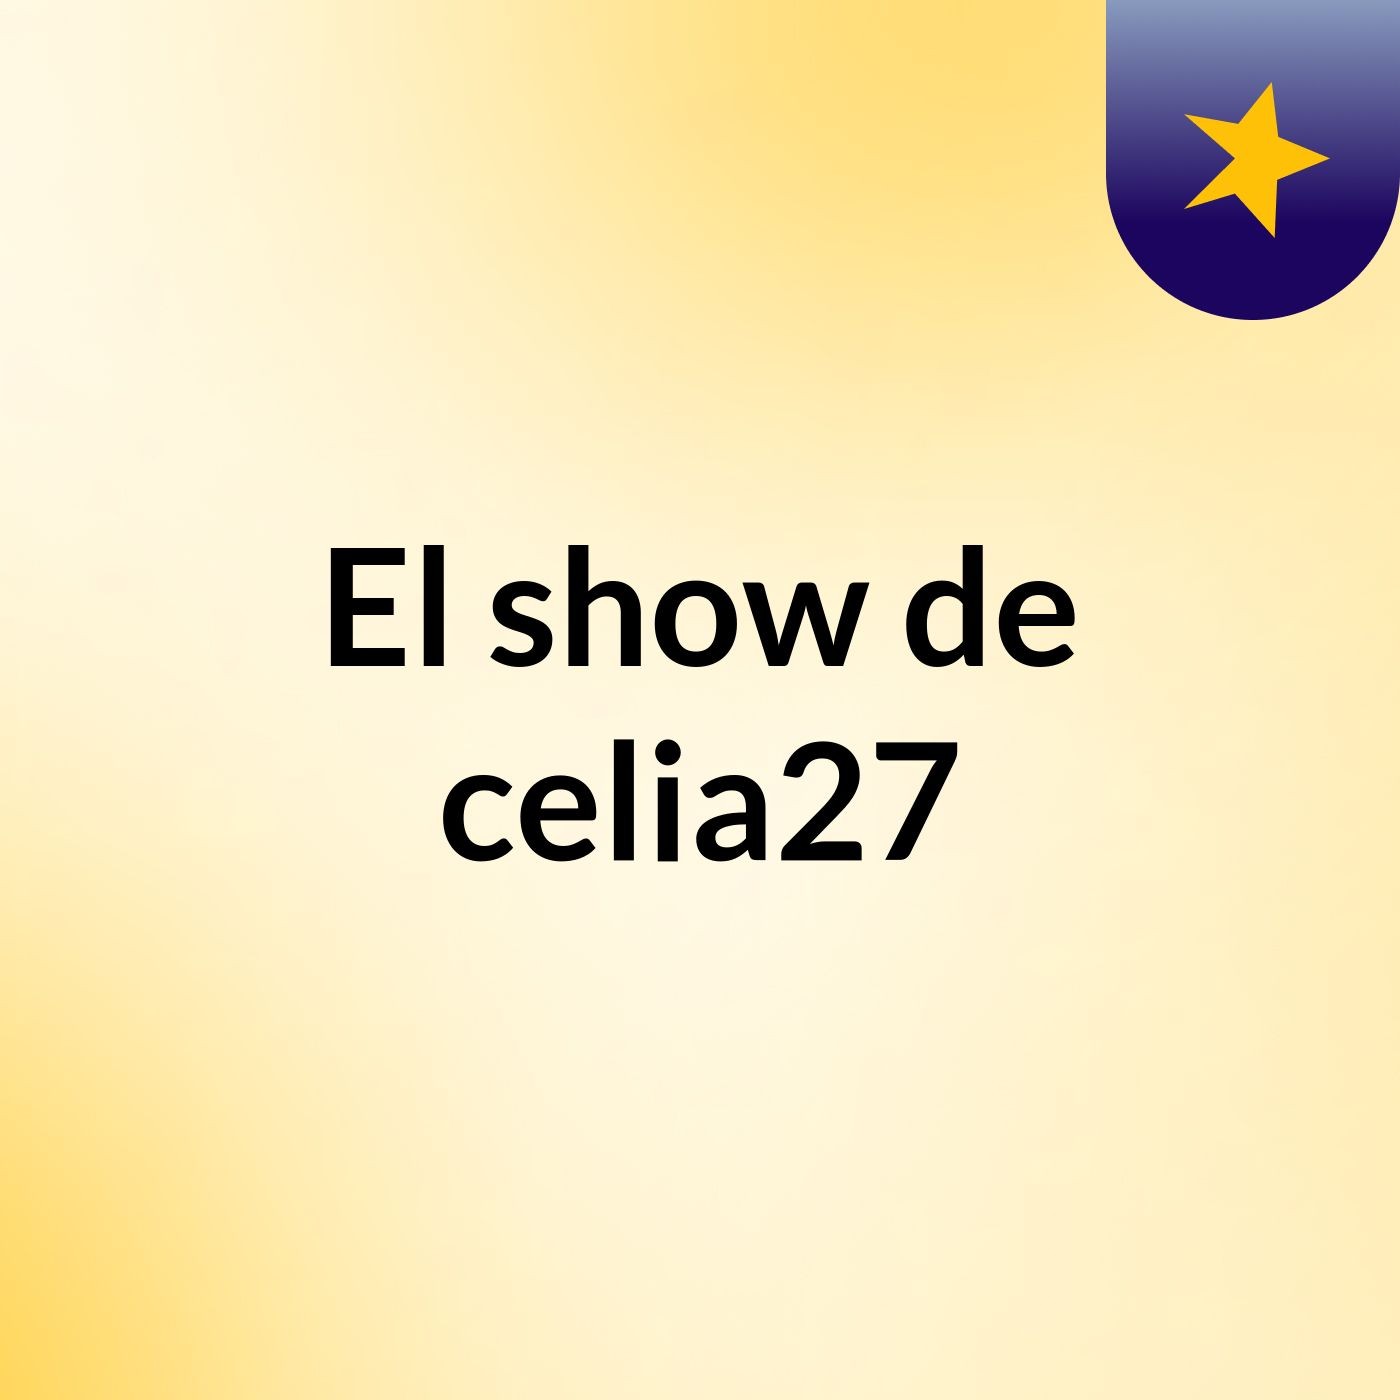 El show de celia27